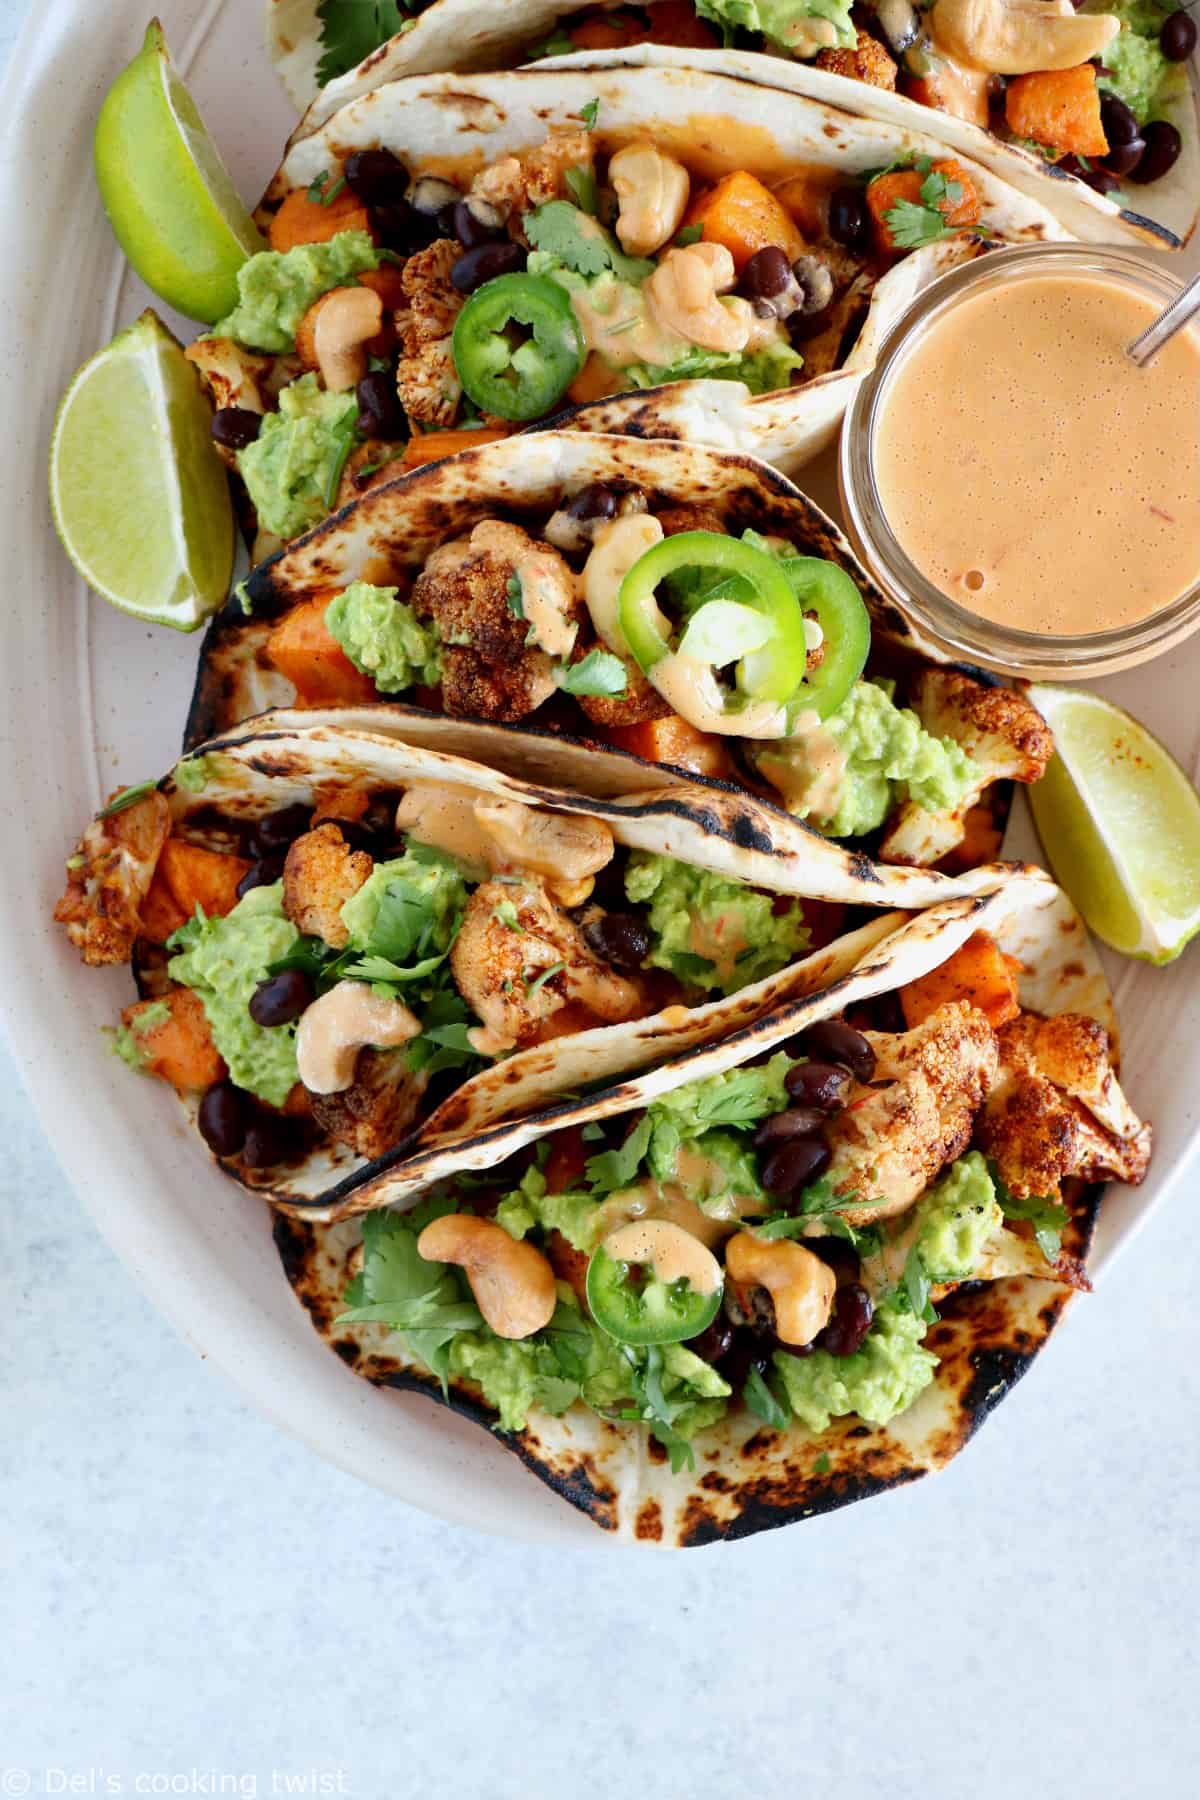 Tacos vegan garnis de patates douces et fleurets de chou-fleur rôtis, le tout réhaussé d'une sauce épicée aux noix de cajou et harissa. Ces tacos sont parfaits pour un dîner rapide entre amis, à la fois sain, nourrissant et très gourmand.